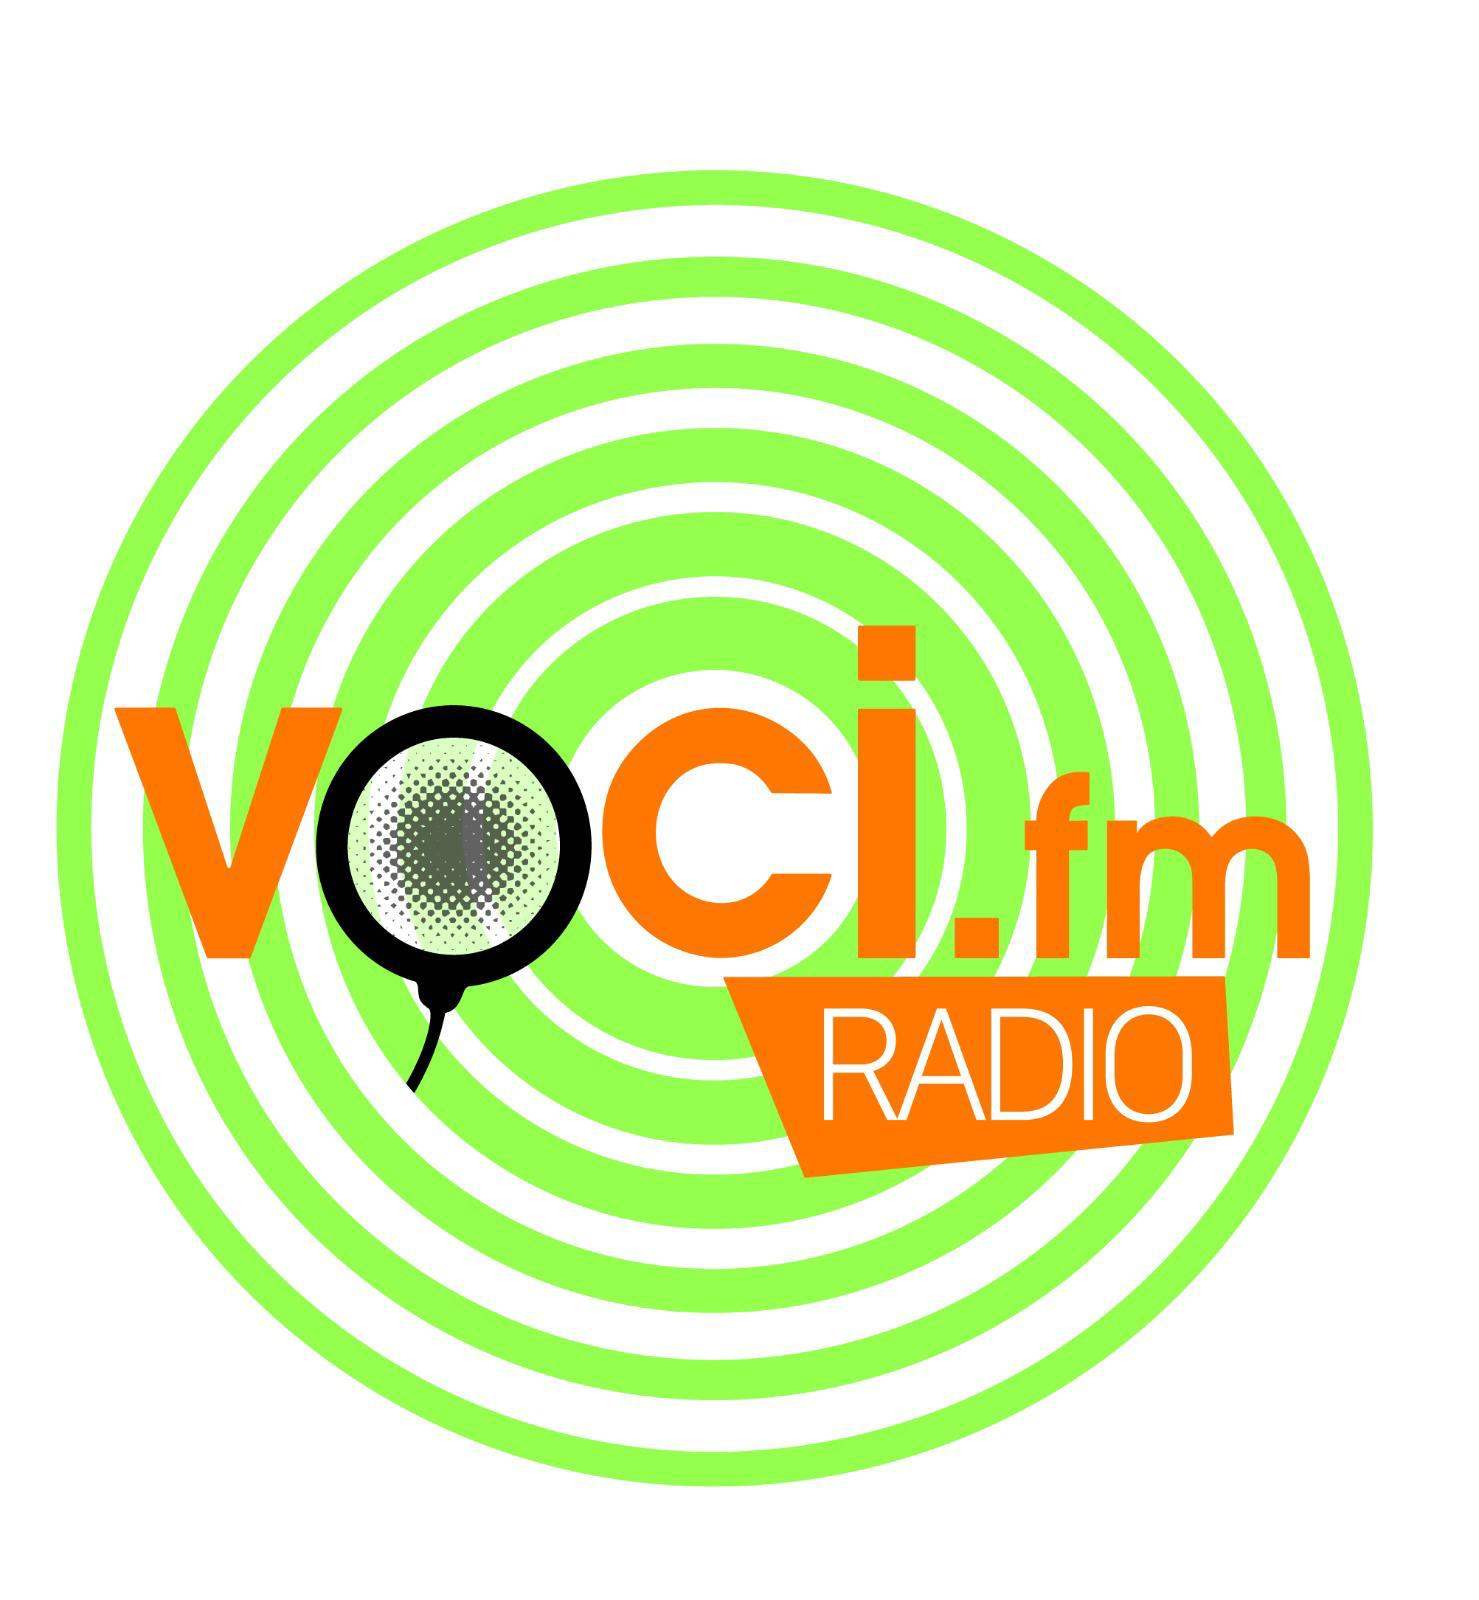 VOCI.fm Radio, la nuova web radio per chi lavora con la voce e non solo